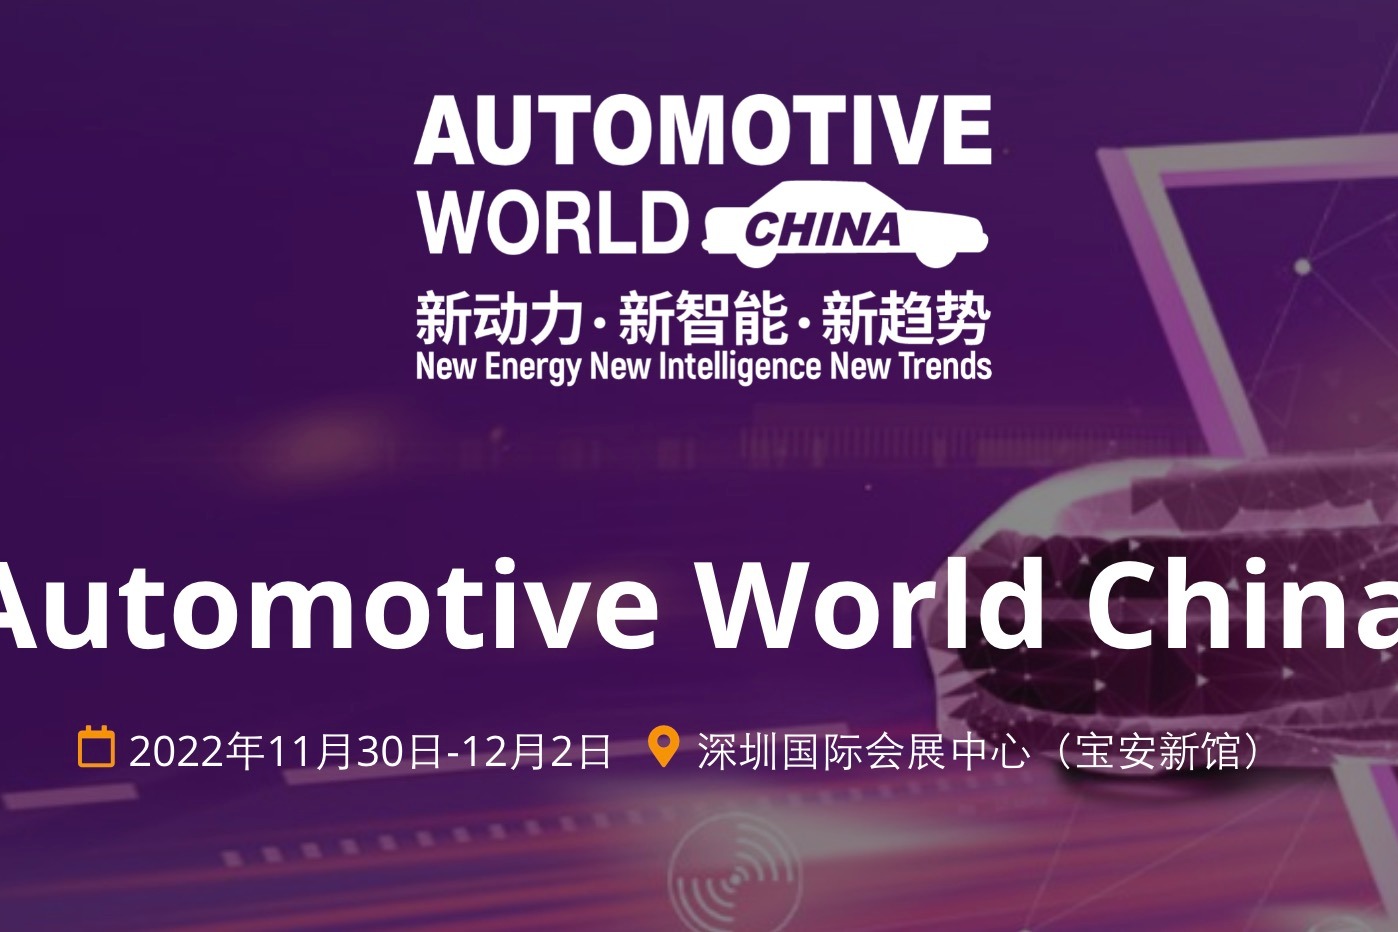 2022 年中国未来交通产业发展峰会将于11月30日-12月1日在深圳举行